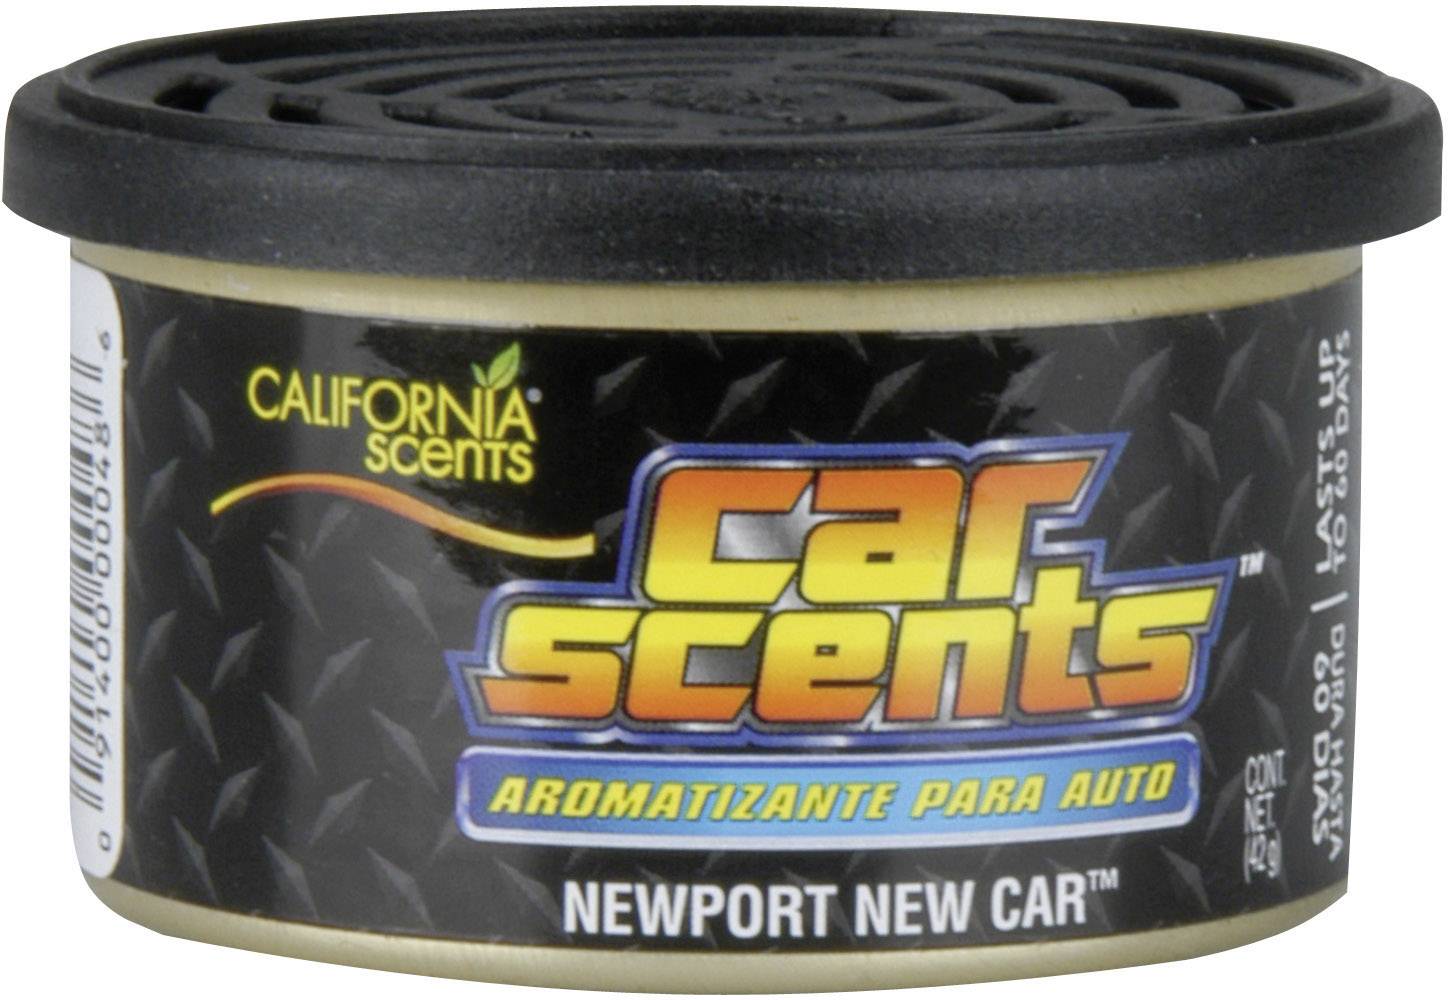 newport new car california scents